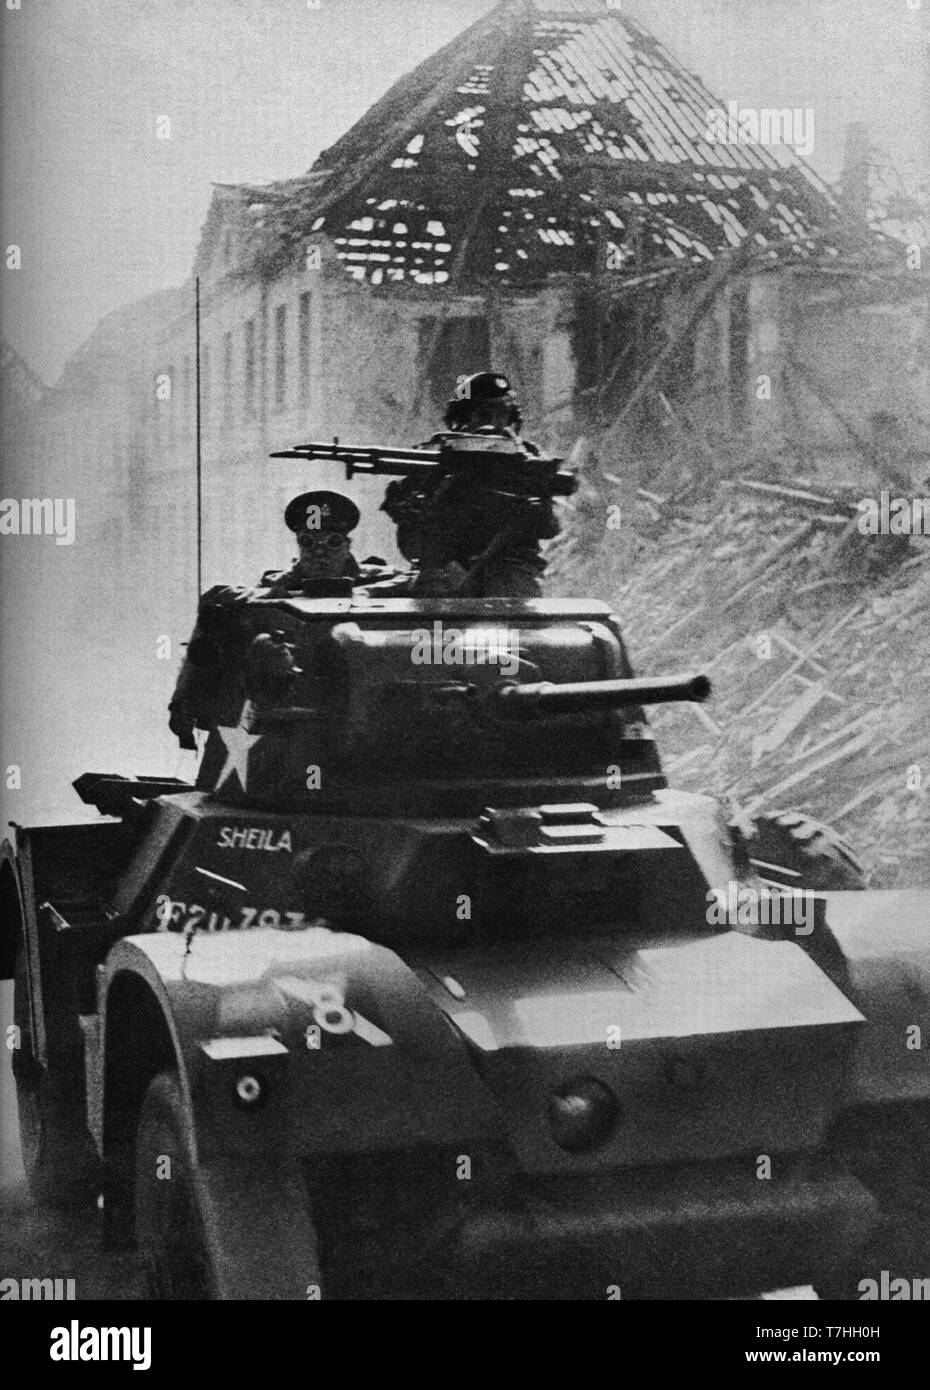 Winston Churchill à bord d'une voiture blindée américaine près du Rhin le 23 mars 1945, juste après la première traversée par les troupes alliées. Banque D'Images